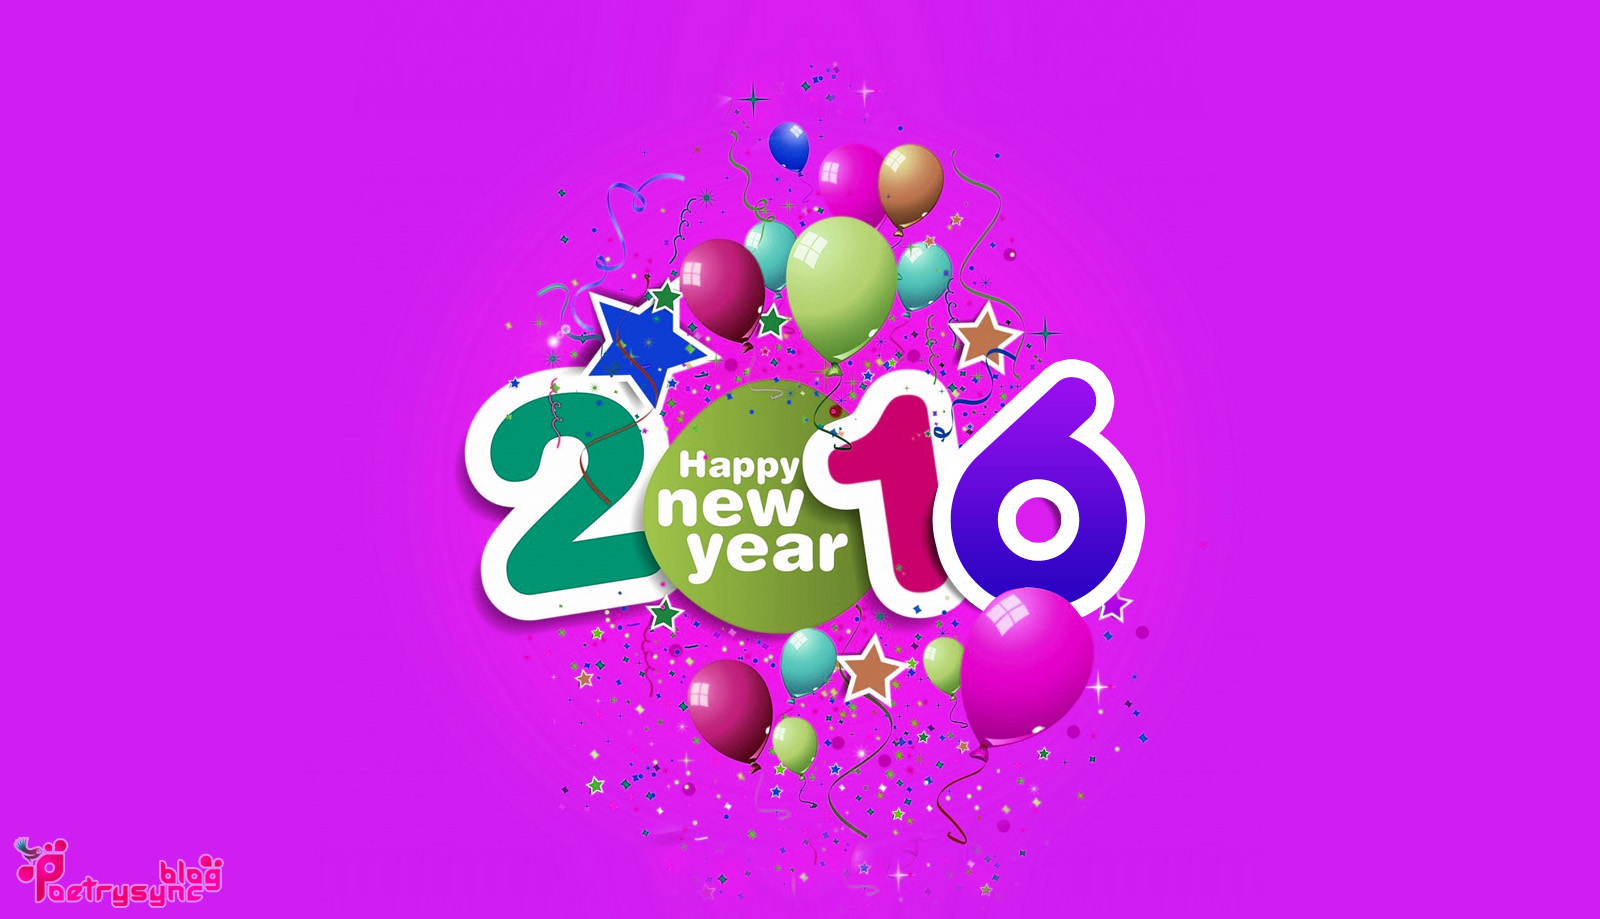 Happy New Year 2016 Desktop Wallpaper 1600x919